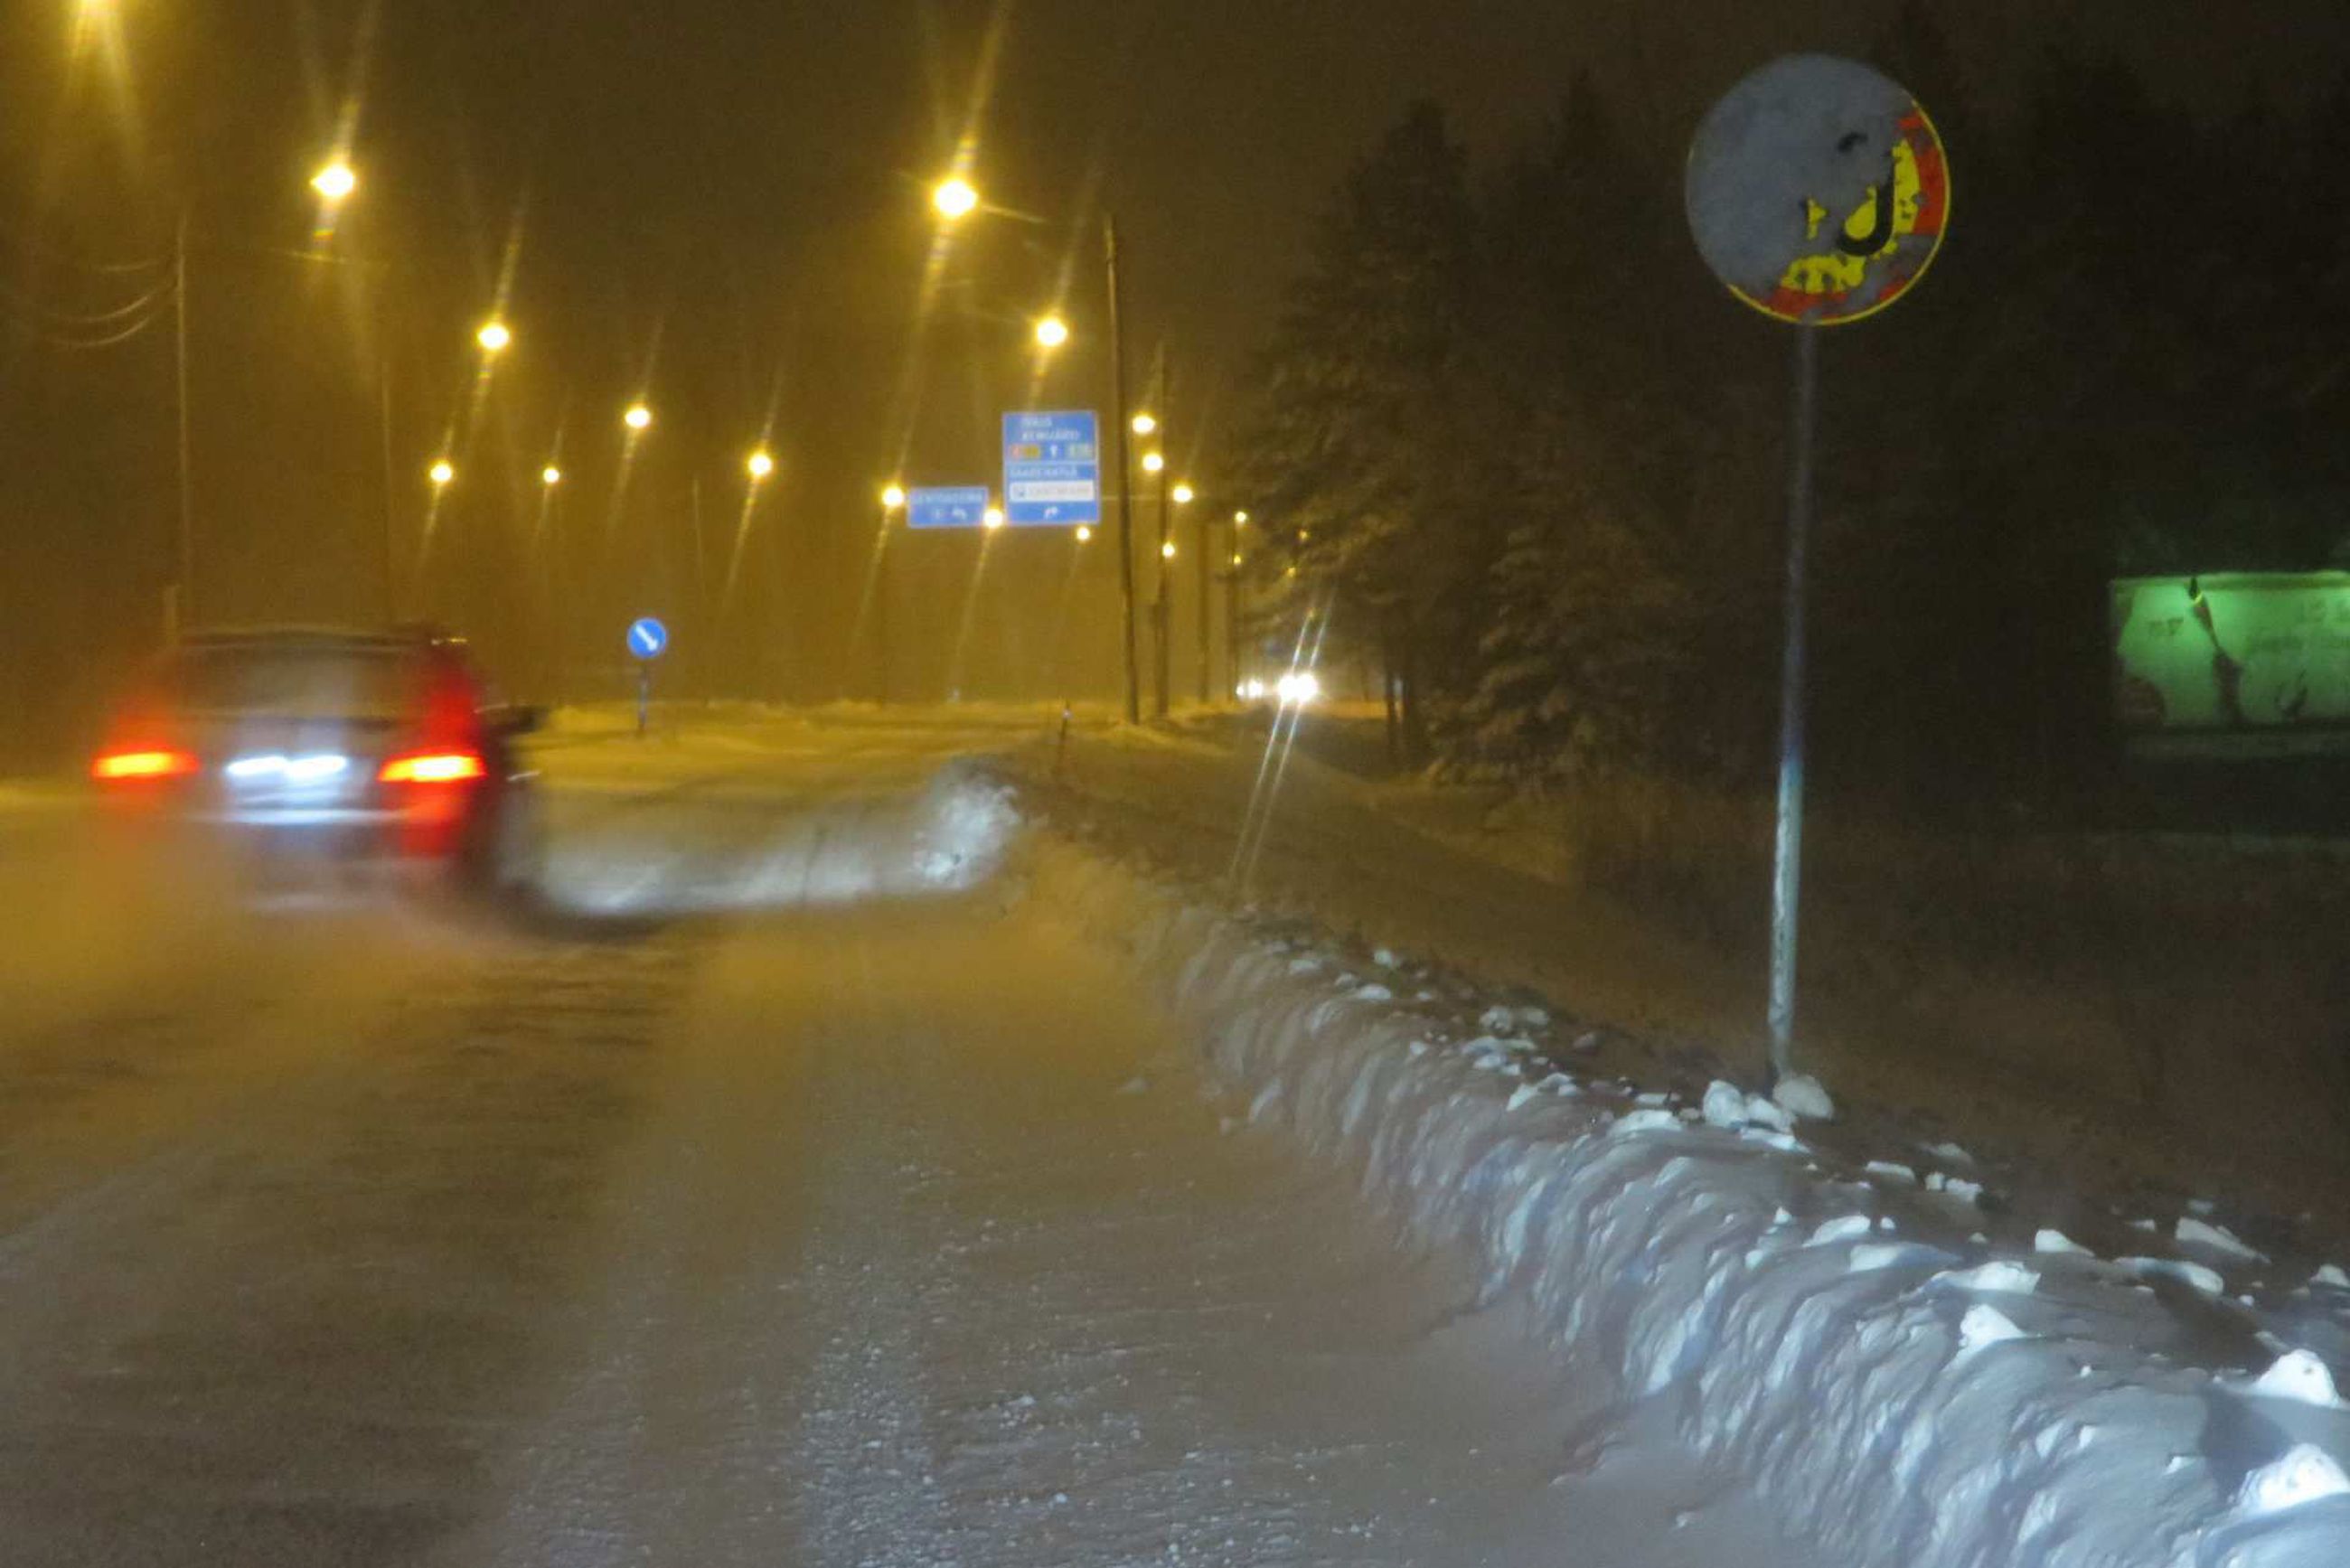 Lumi peitti liikennemerkin Rovaniemellä – peltipoliisi mätkäisi  oululaiselle perheenisälle sakot, vaikka poliisi olisi voinut myös armahtaa  | Lapin Kansa